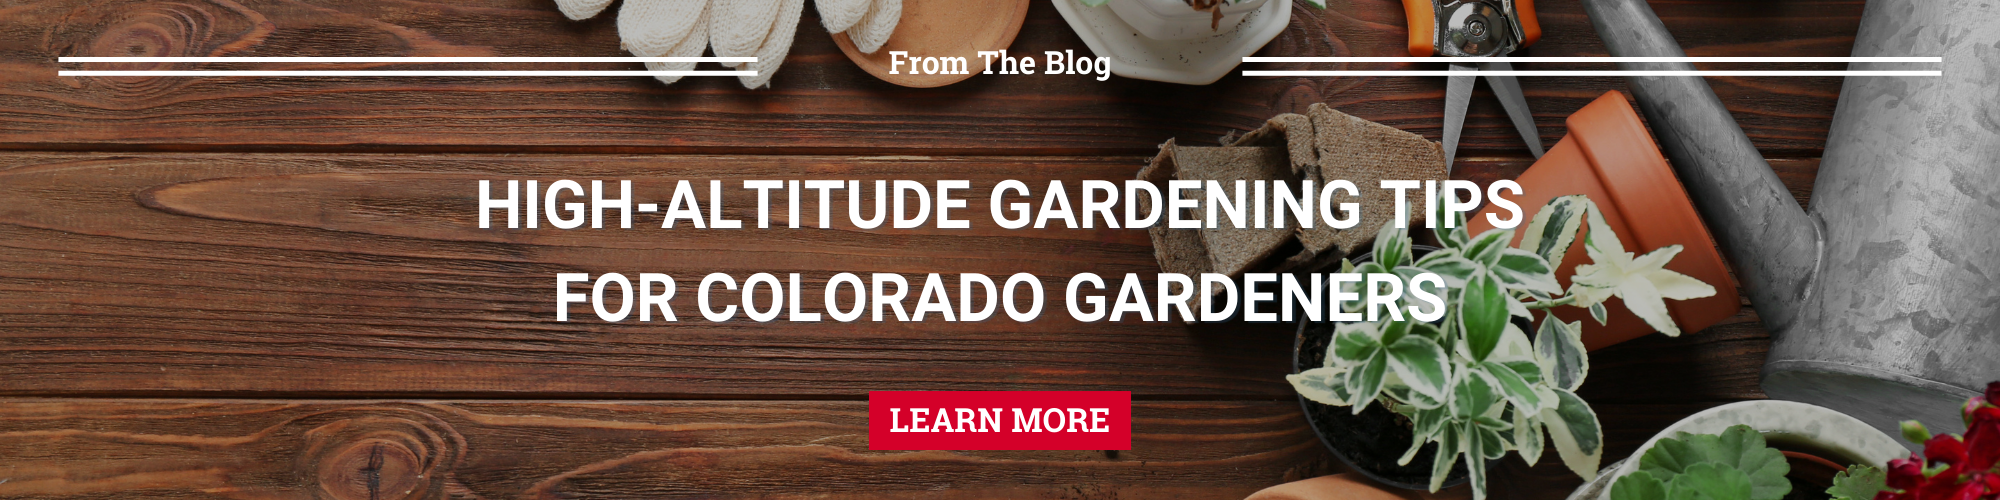 High altitude gardening tips for Colorado Gardeners